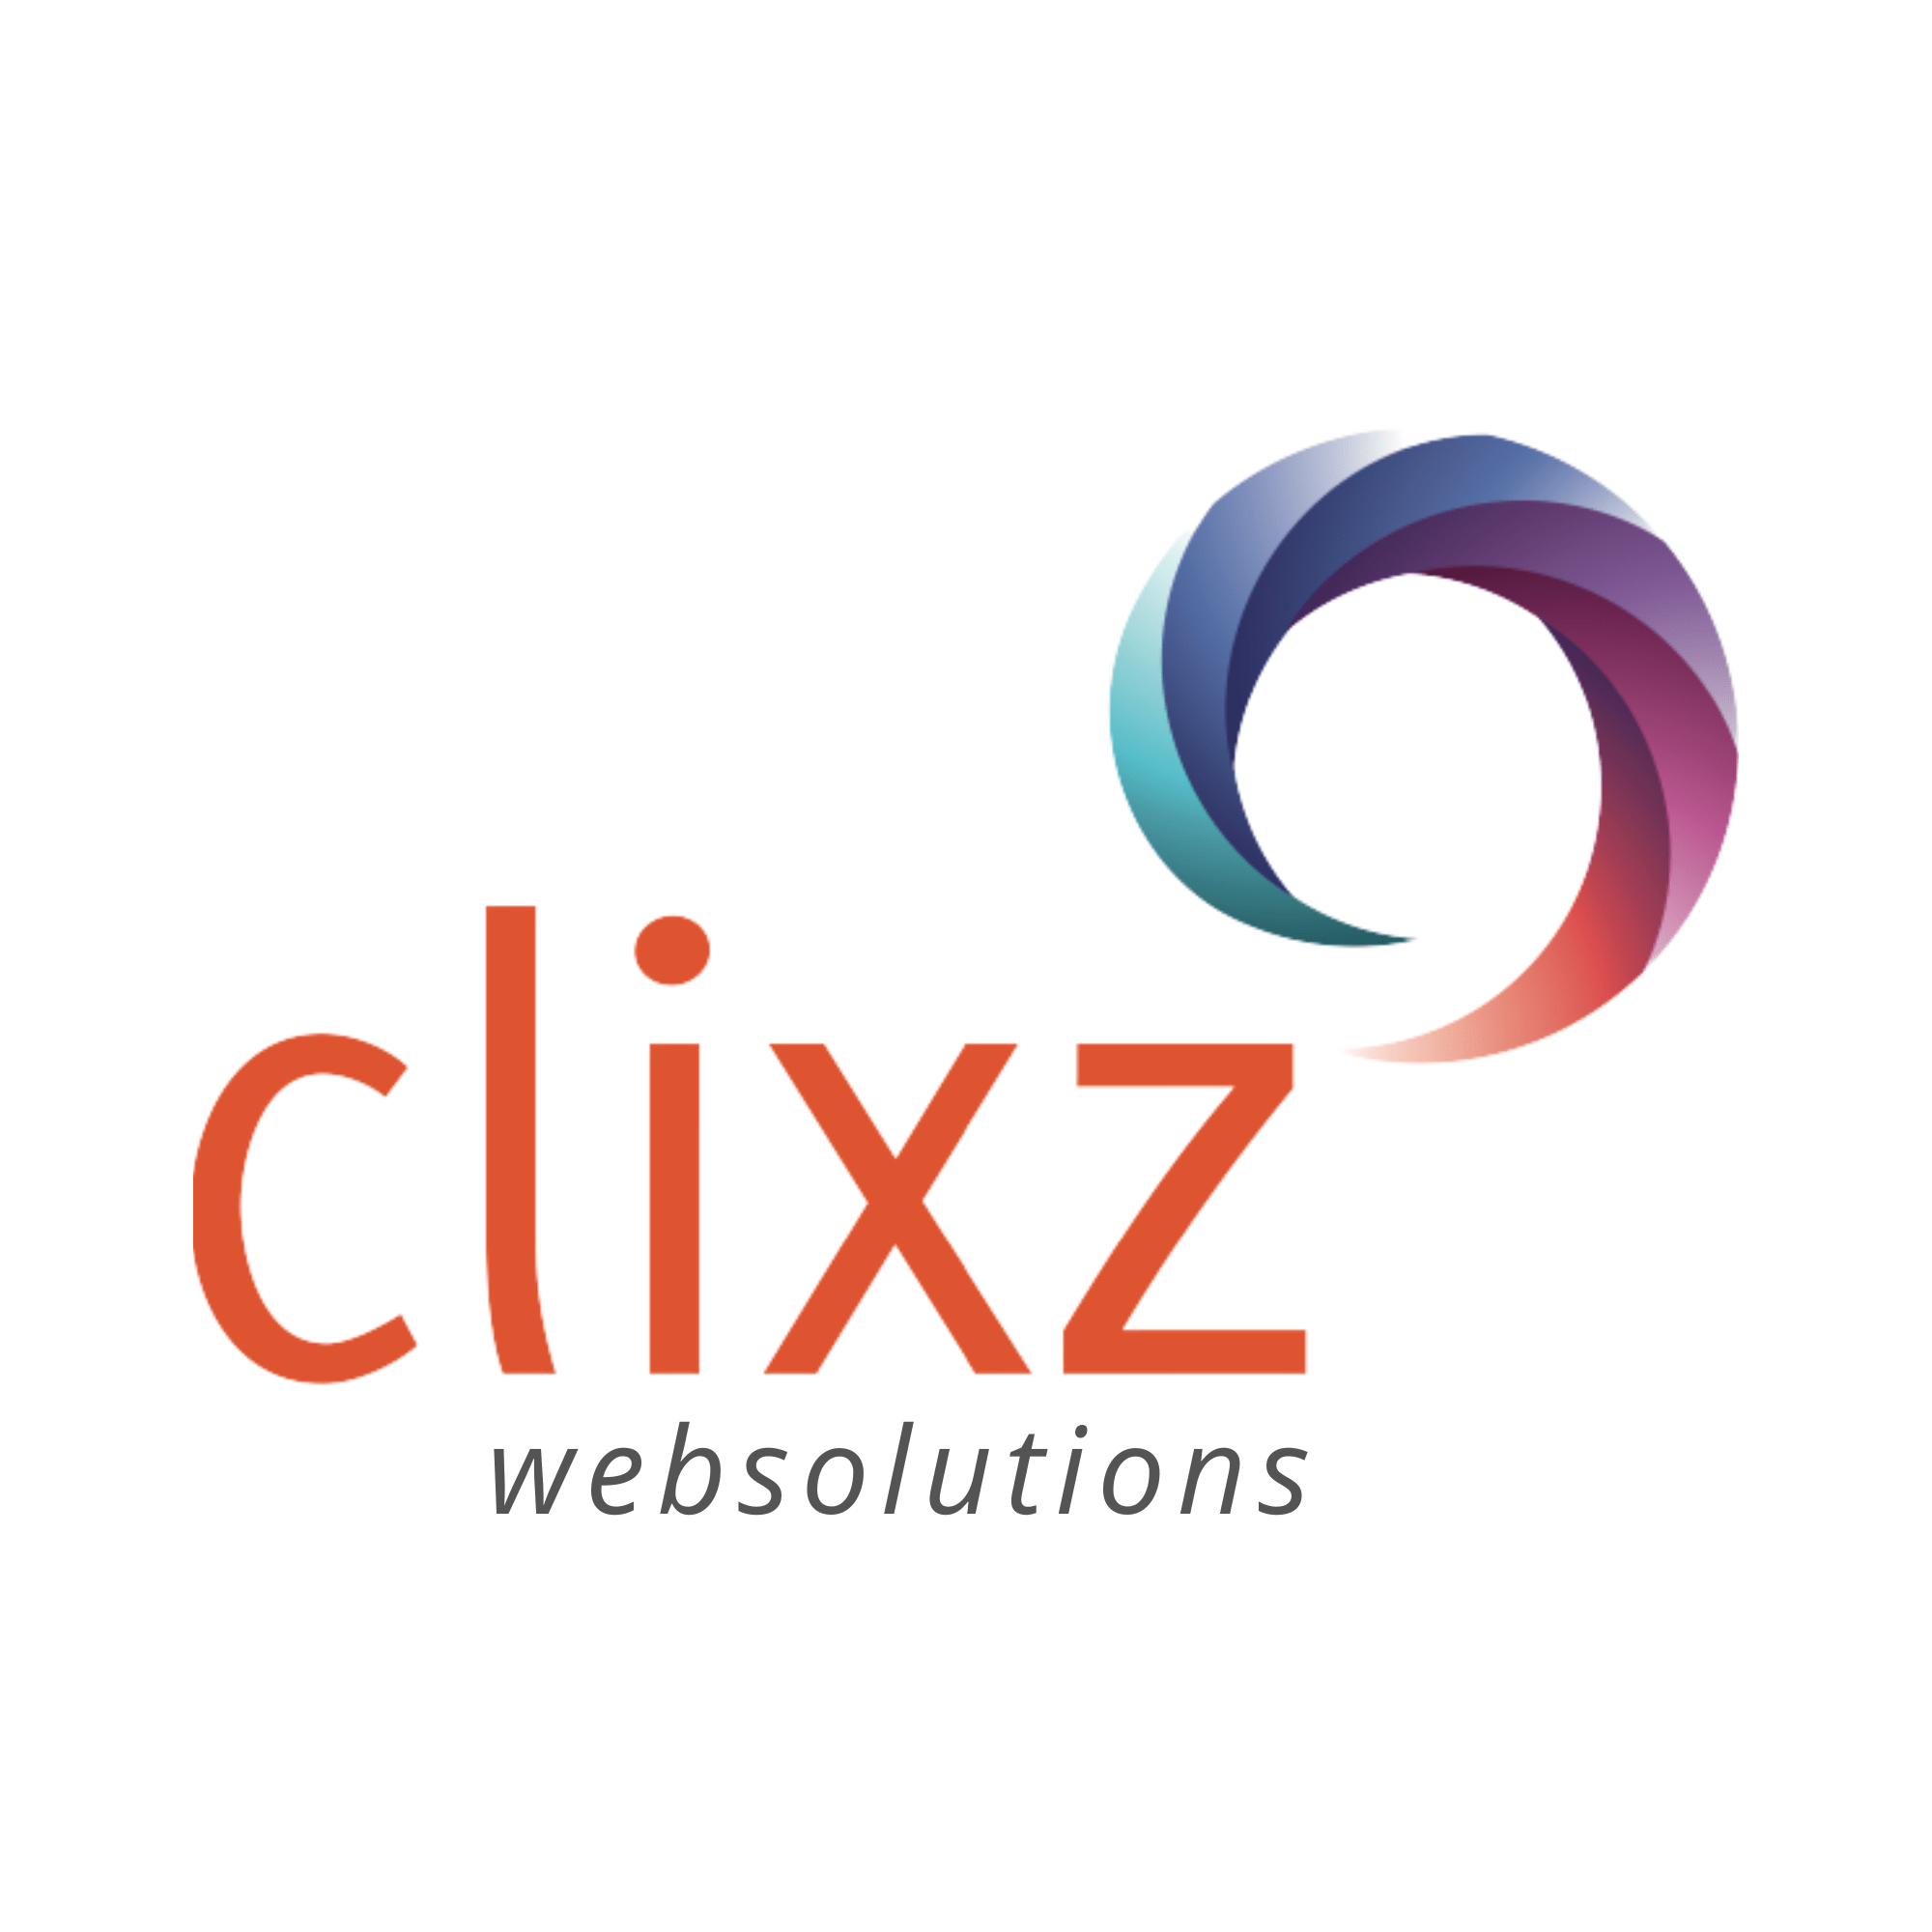 Clixz Websolutions: pragmatische oplossingen voor het web!